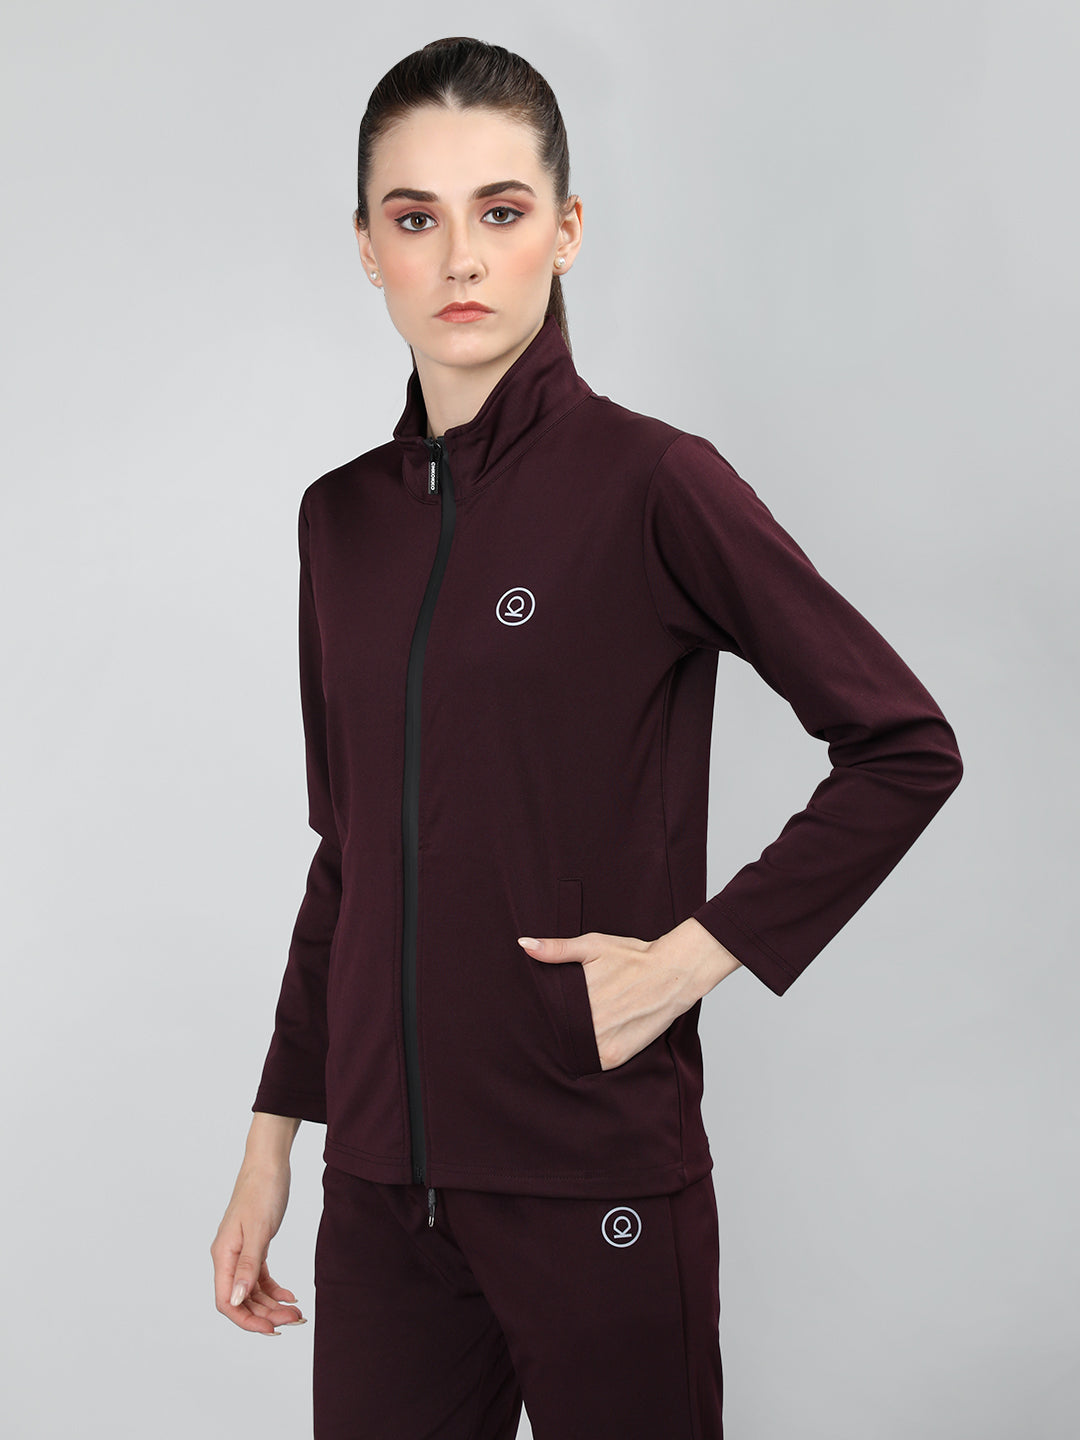 Women Winter Sports Zipper Stylish Jacket| CHKOKKO